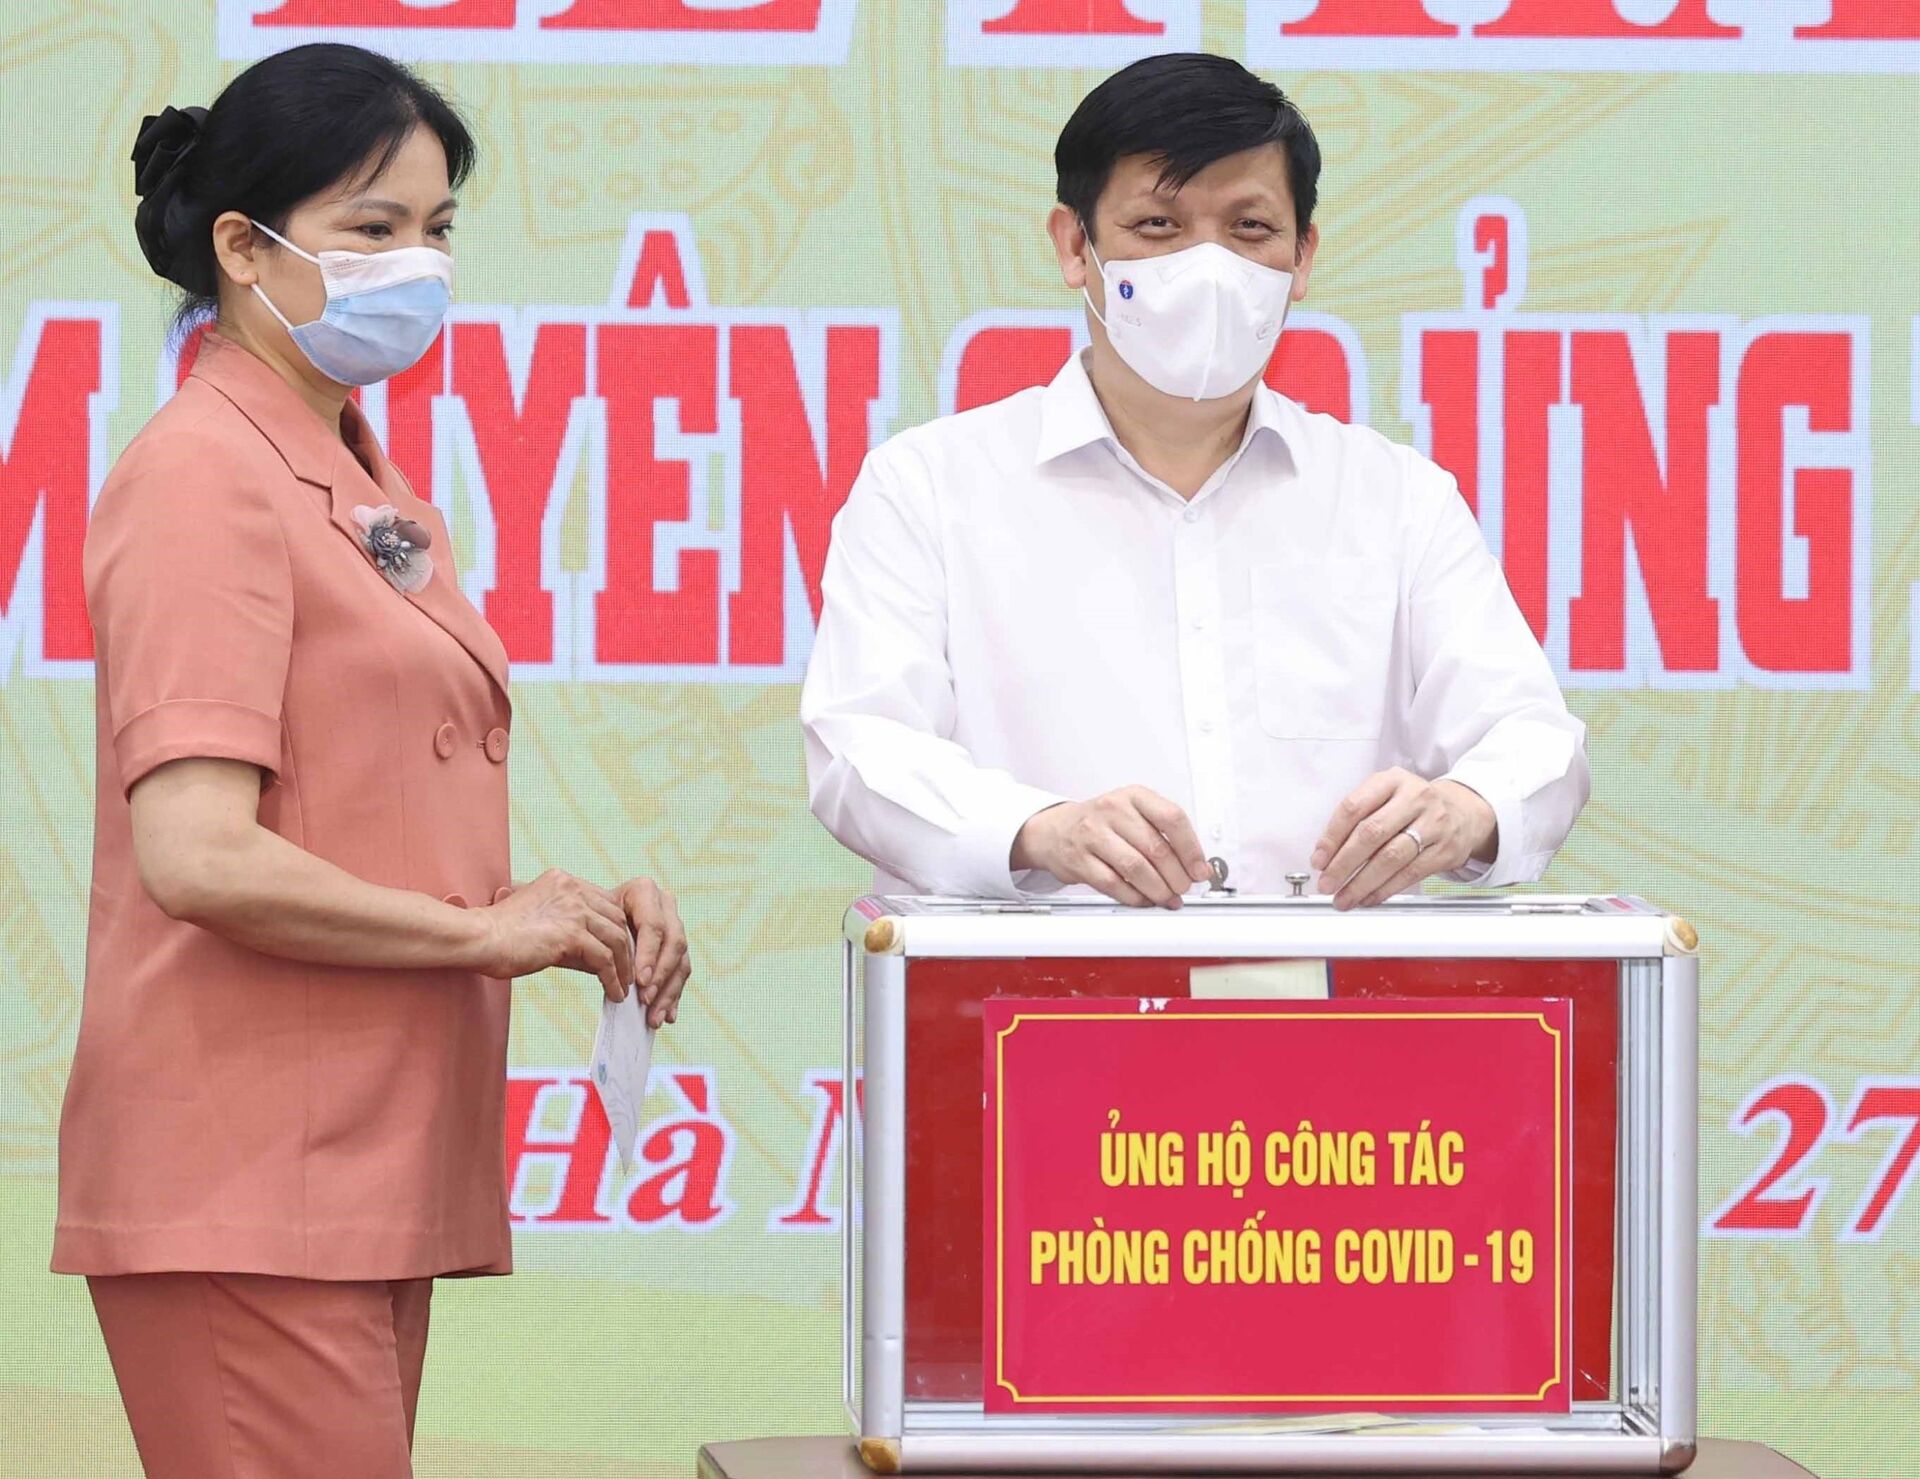 Việt Nam tìm ra hướng đi mới cho vấn đề nguồn cung vaccine Covid-19 - Sputnik Việt Nam, 1920, 28.05.2021